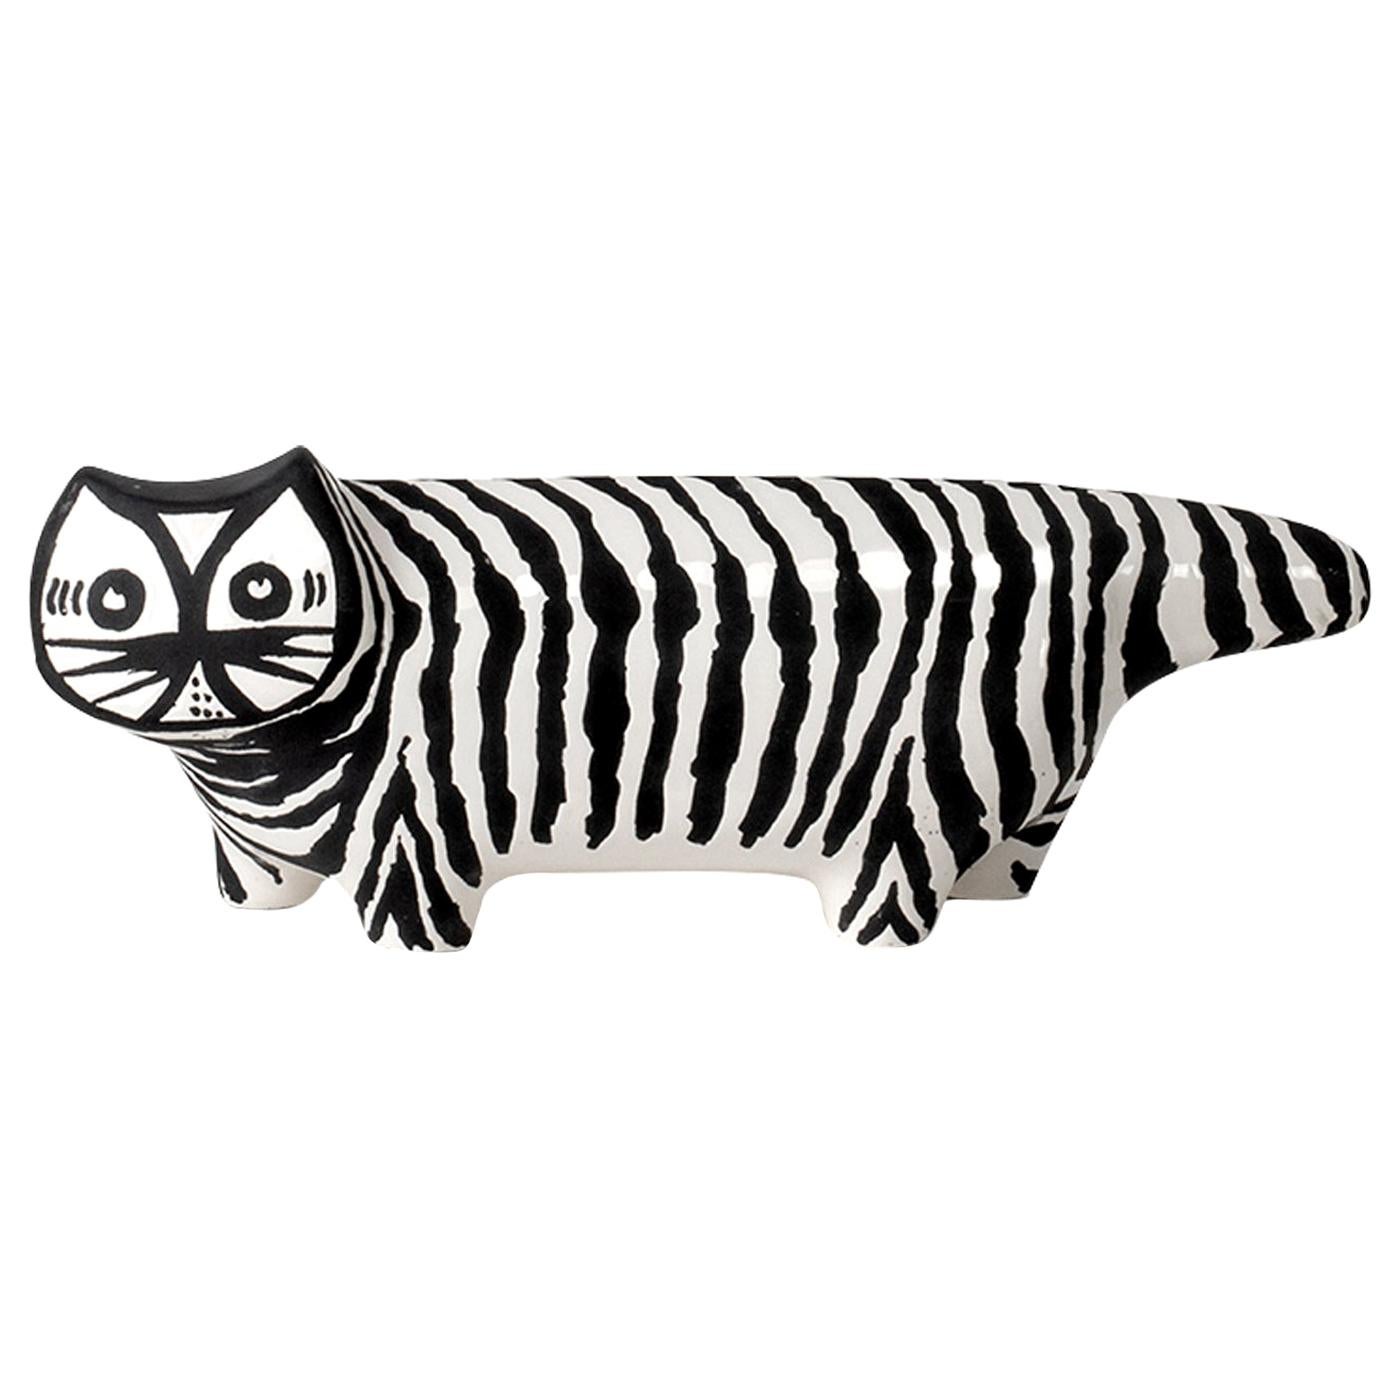 Cette sculpture saisissante en forme de chat en peau de tigre (